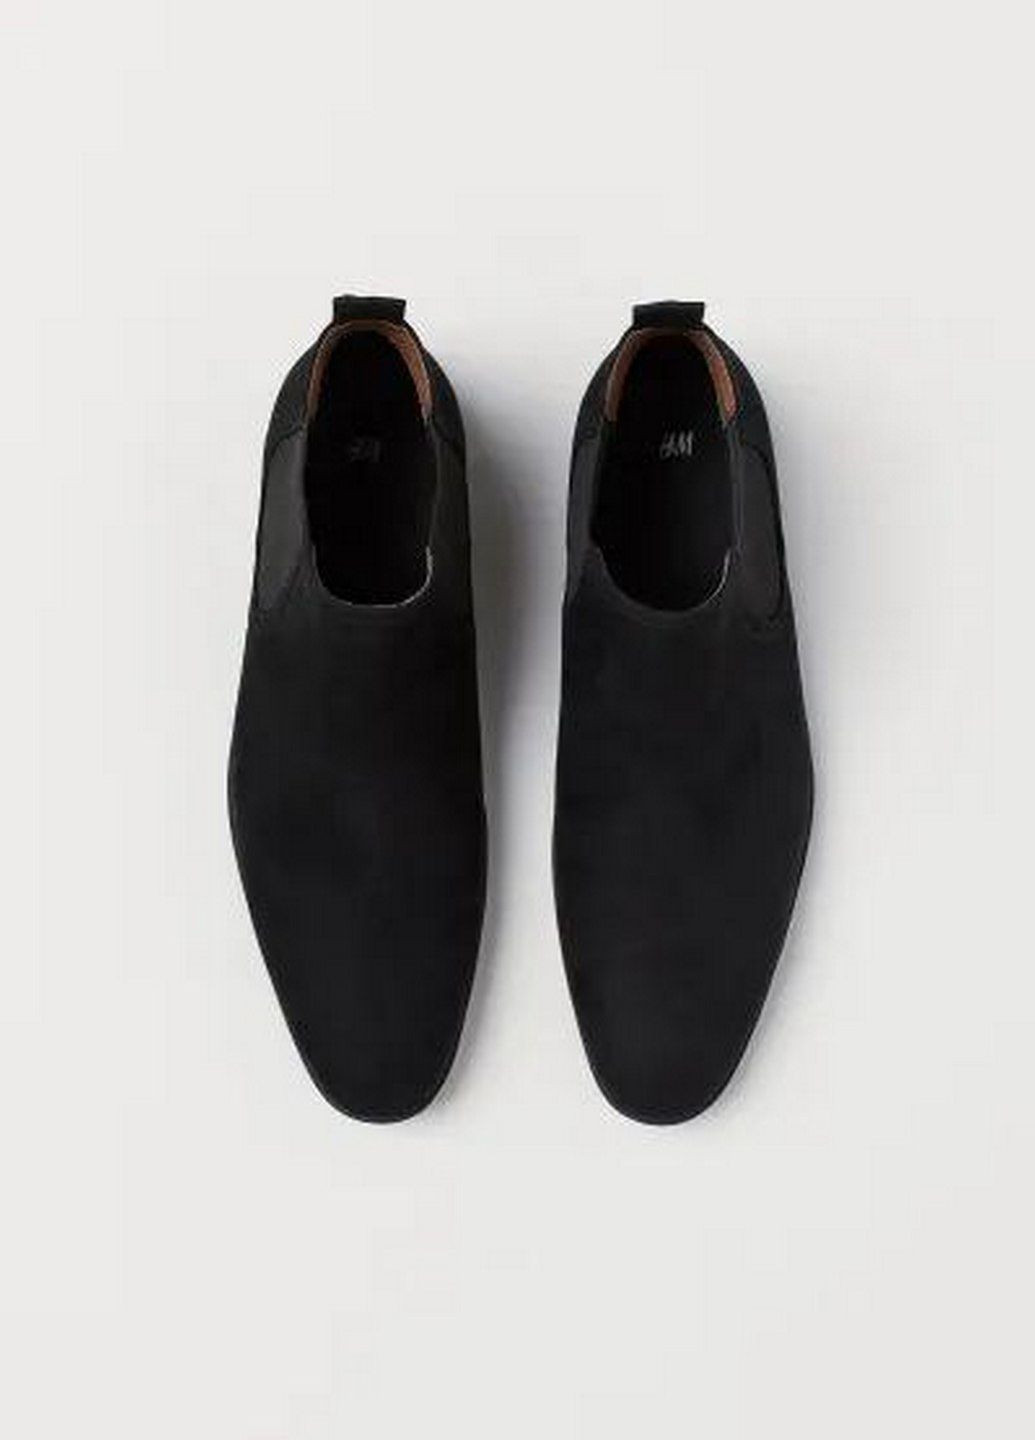 Черные ботинки H&M